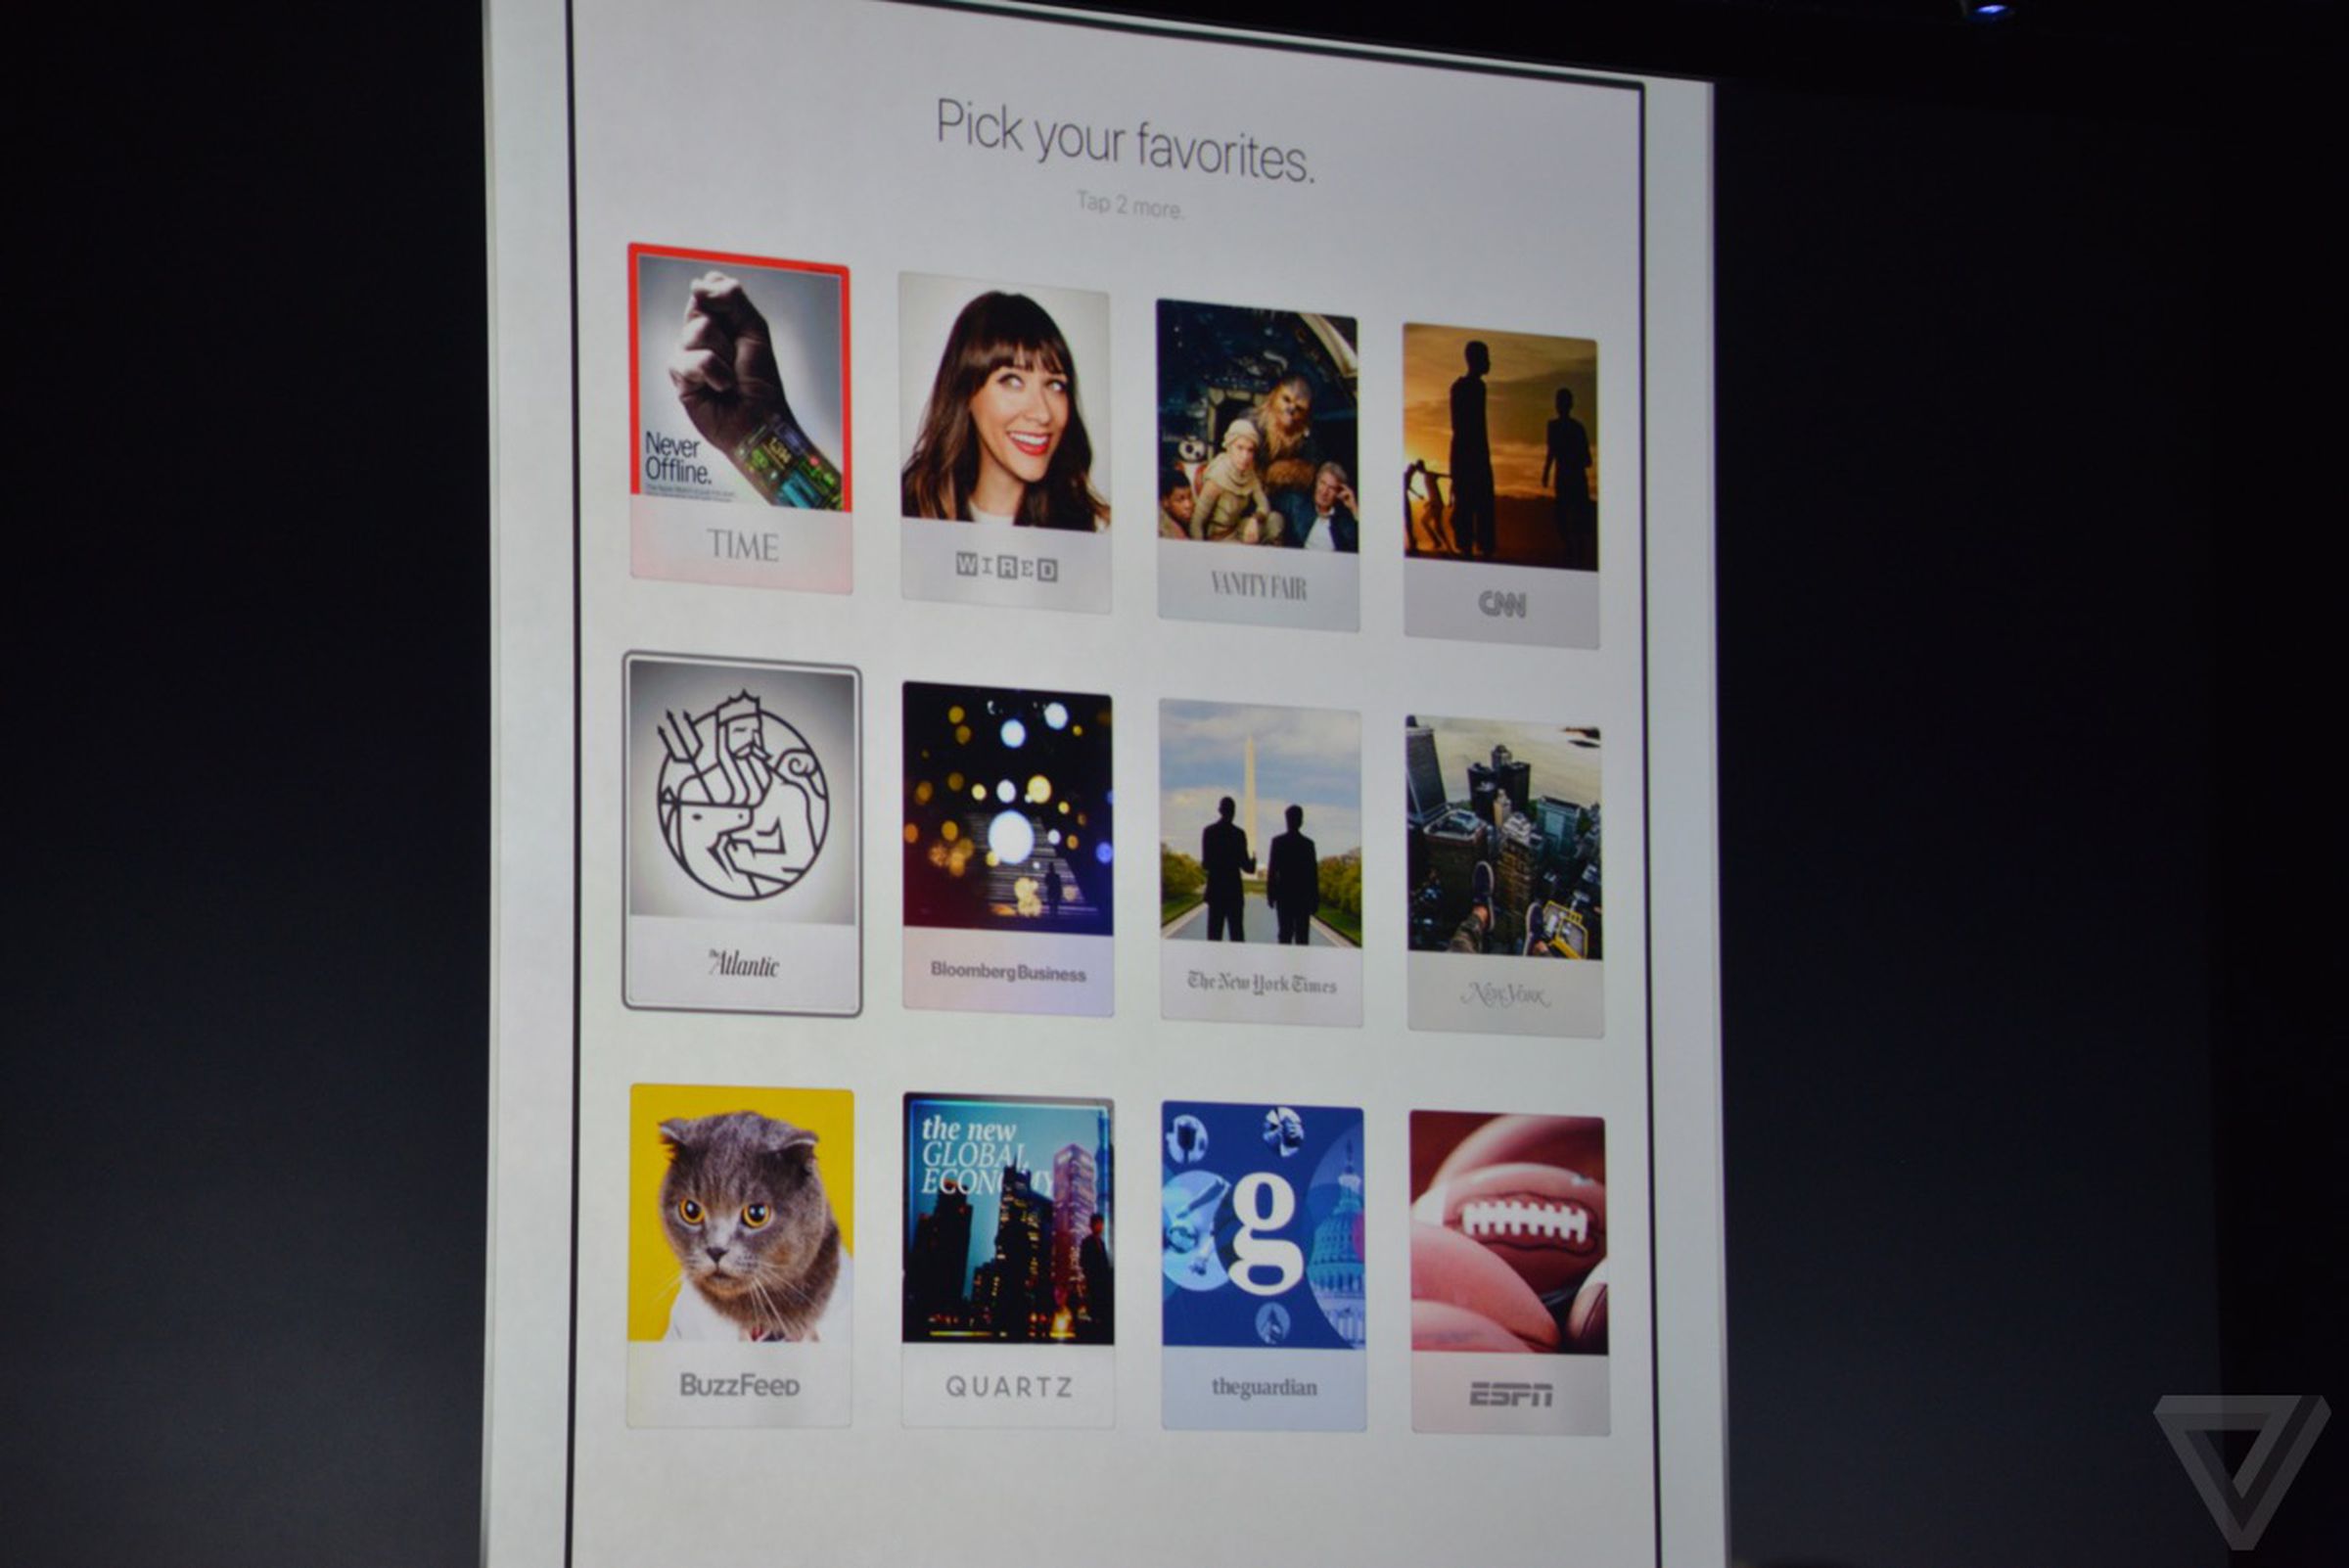 iOS 9 News app photos